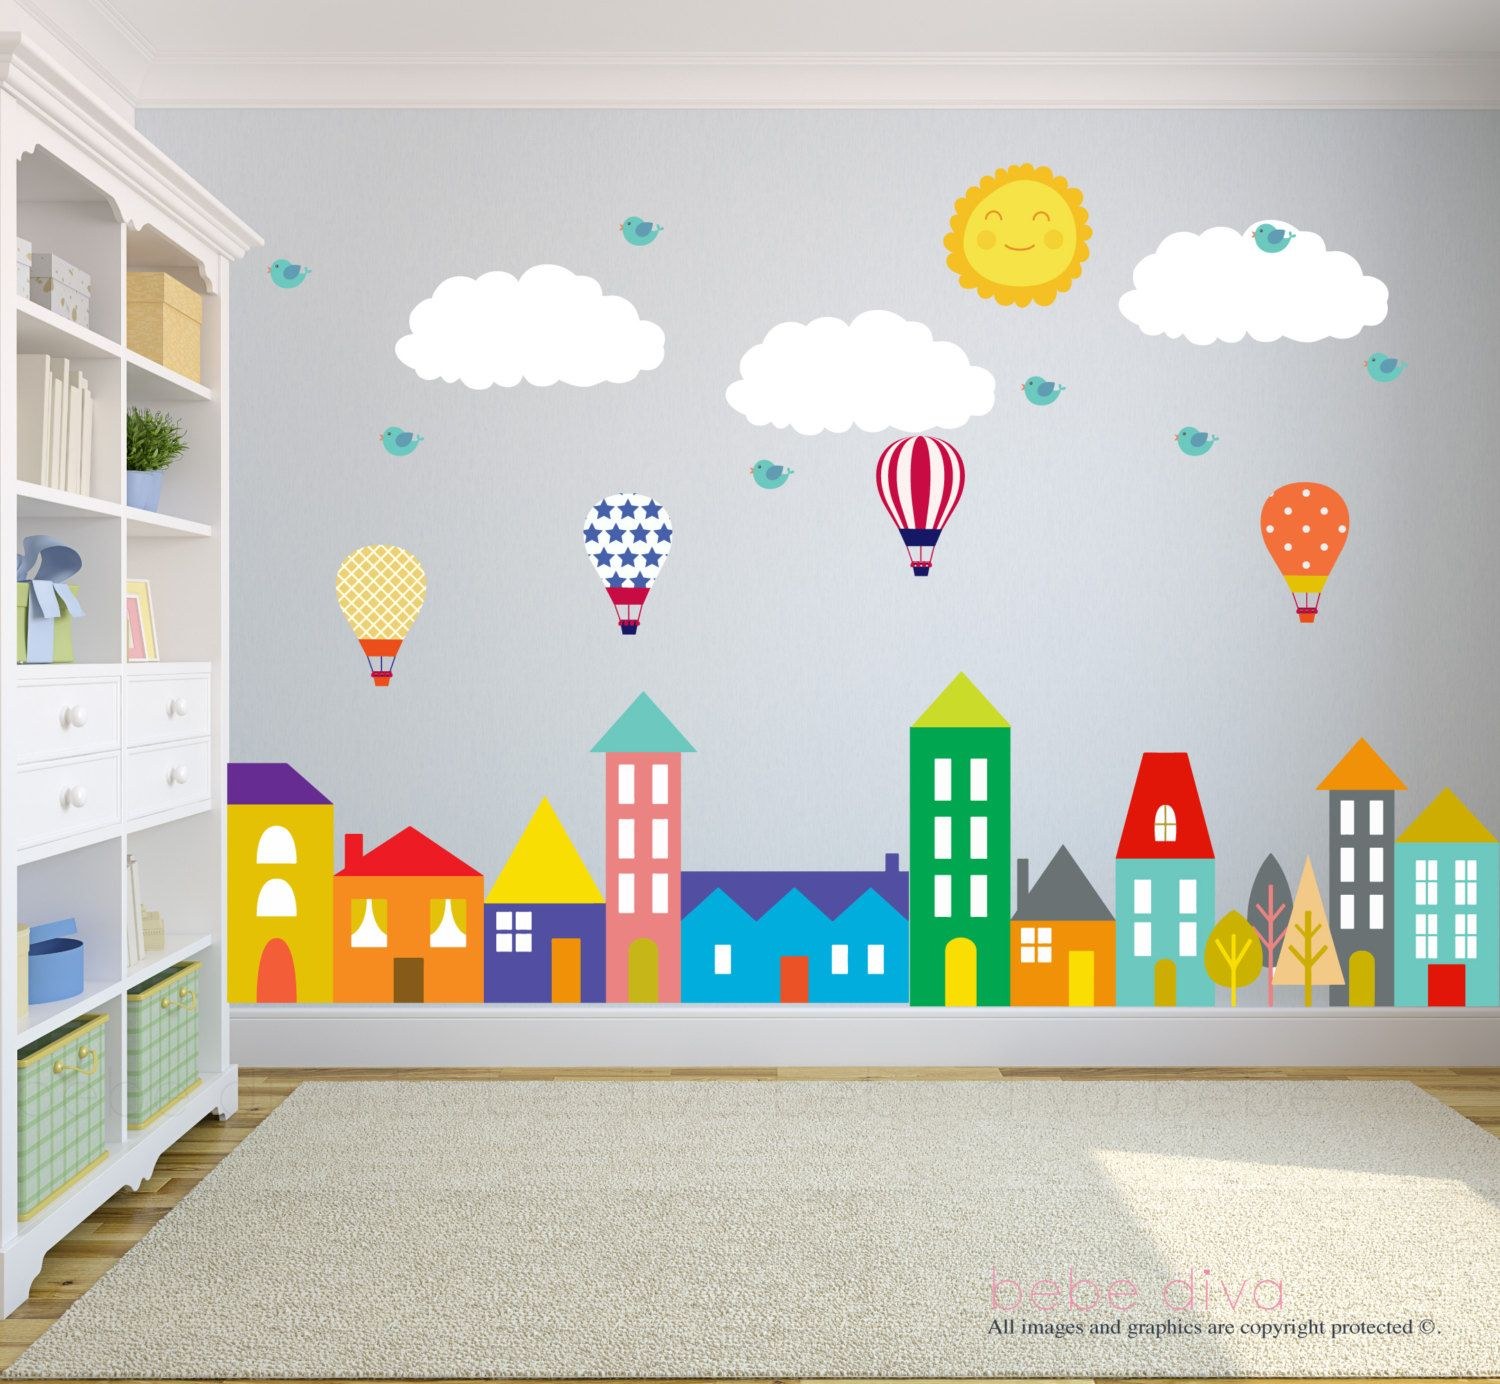 оформление стен в умывальной комнате в детском саду